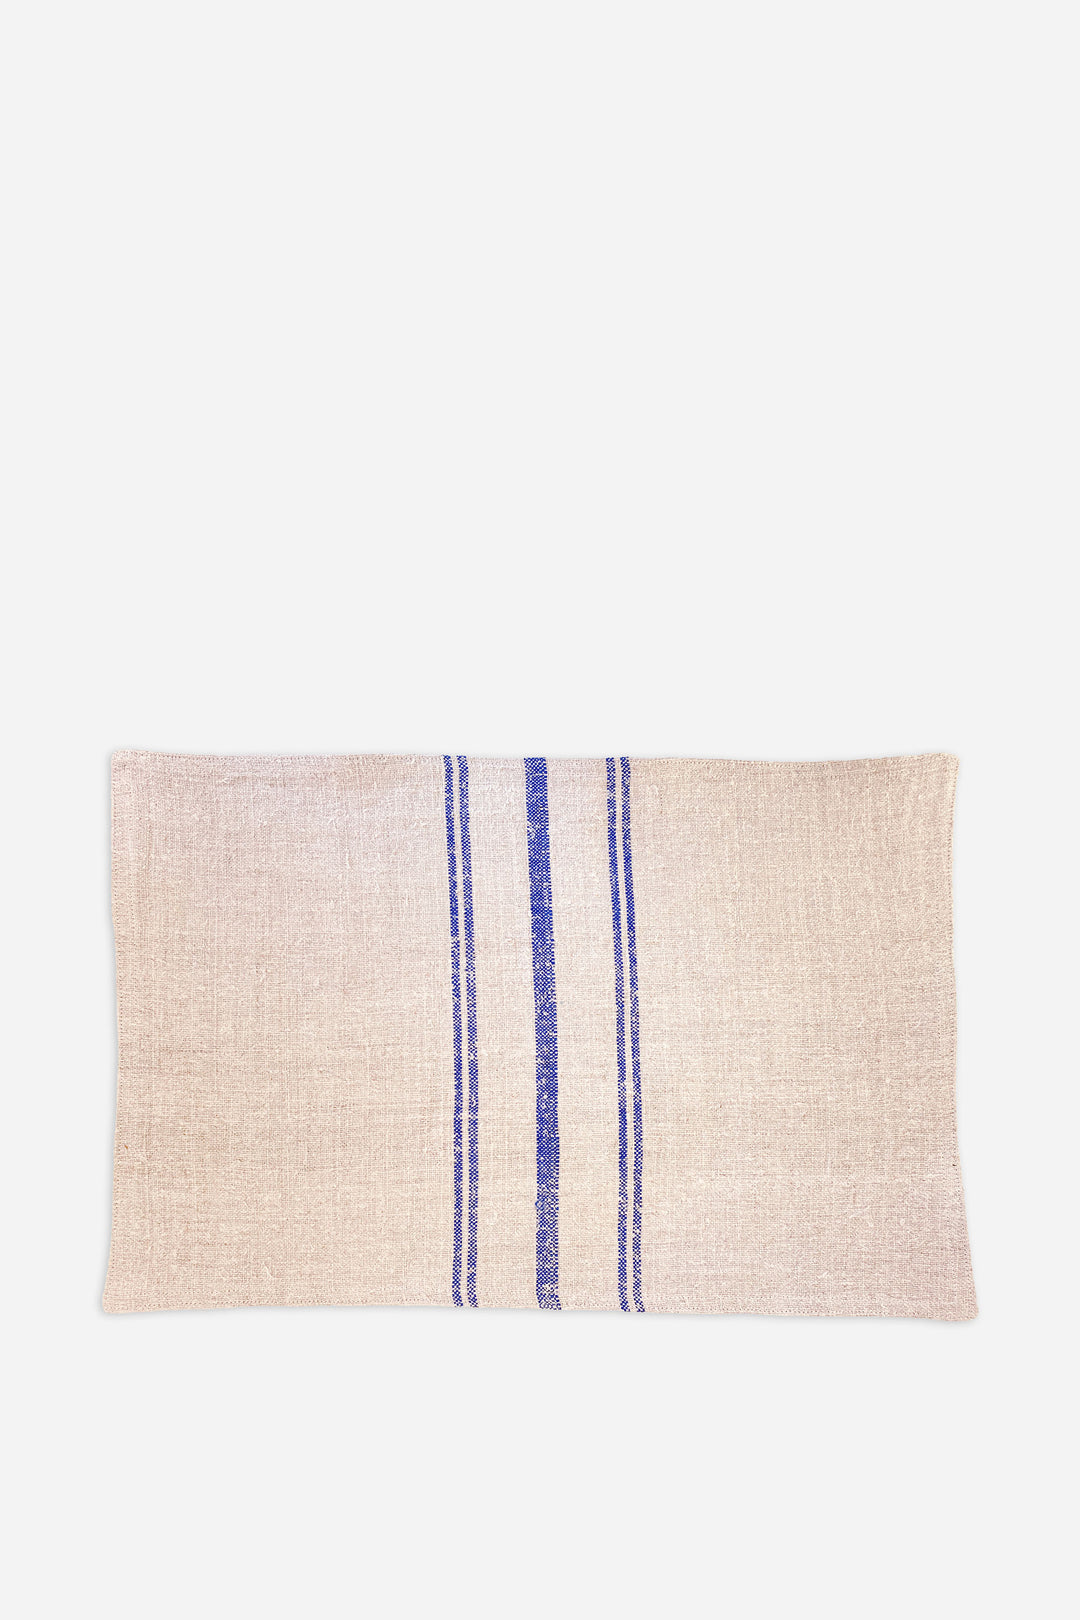 Vintage Grain Sack Placemat / Blue Stripe